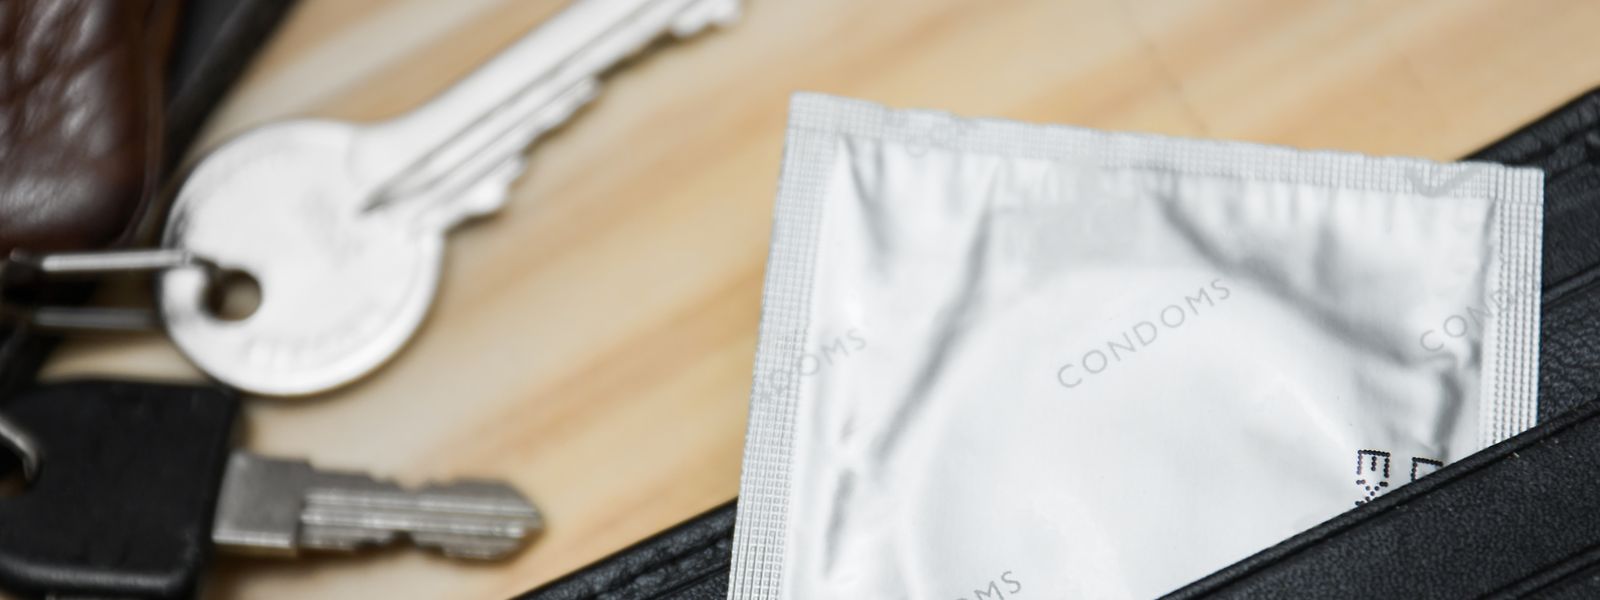 La contraception est parfois vue comme une menace à la masculinité, note Laurence Stevelinck, une universitaire belge.